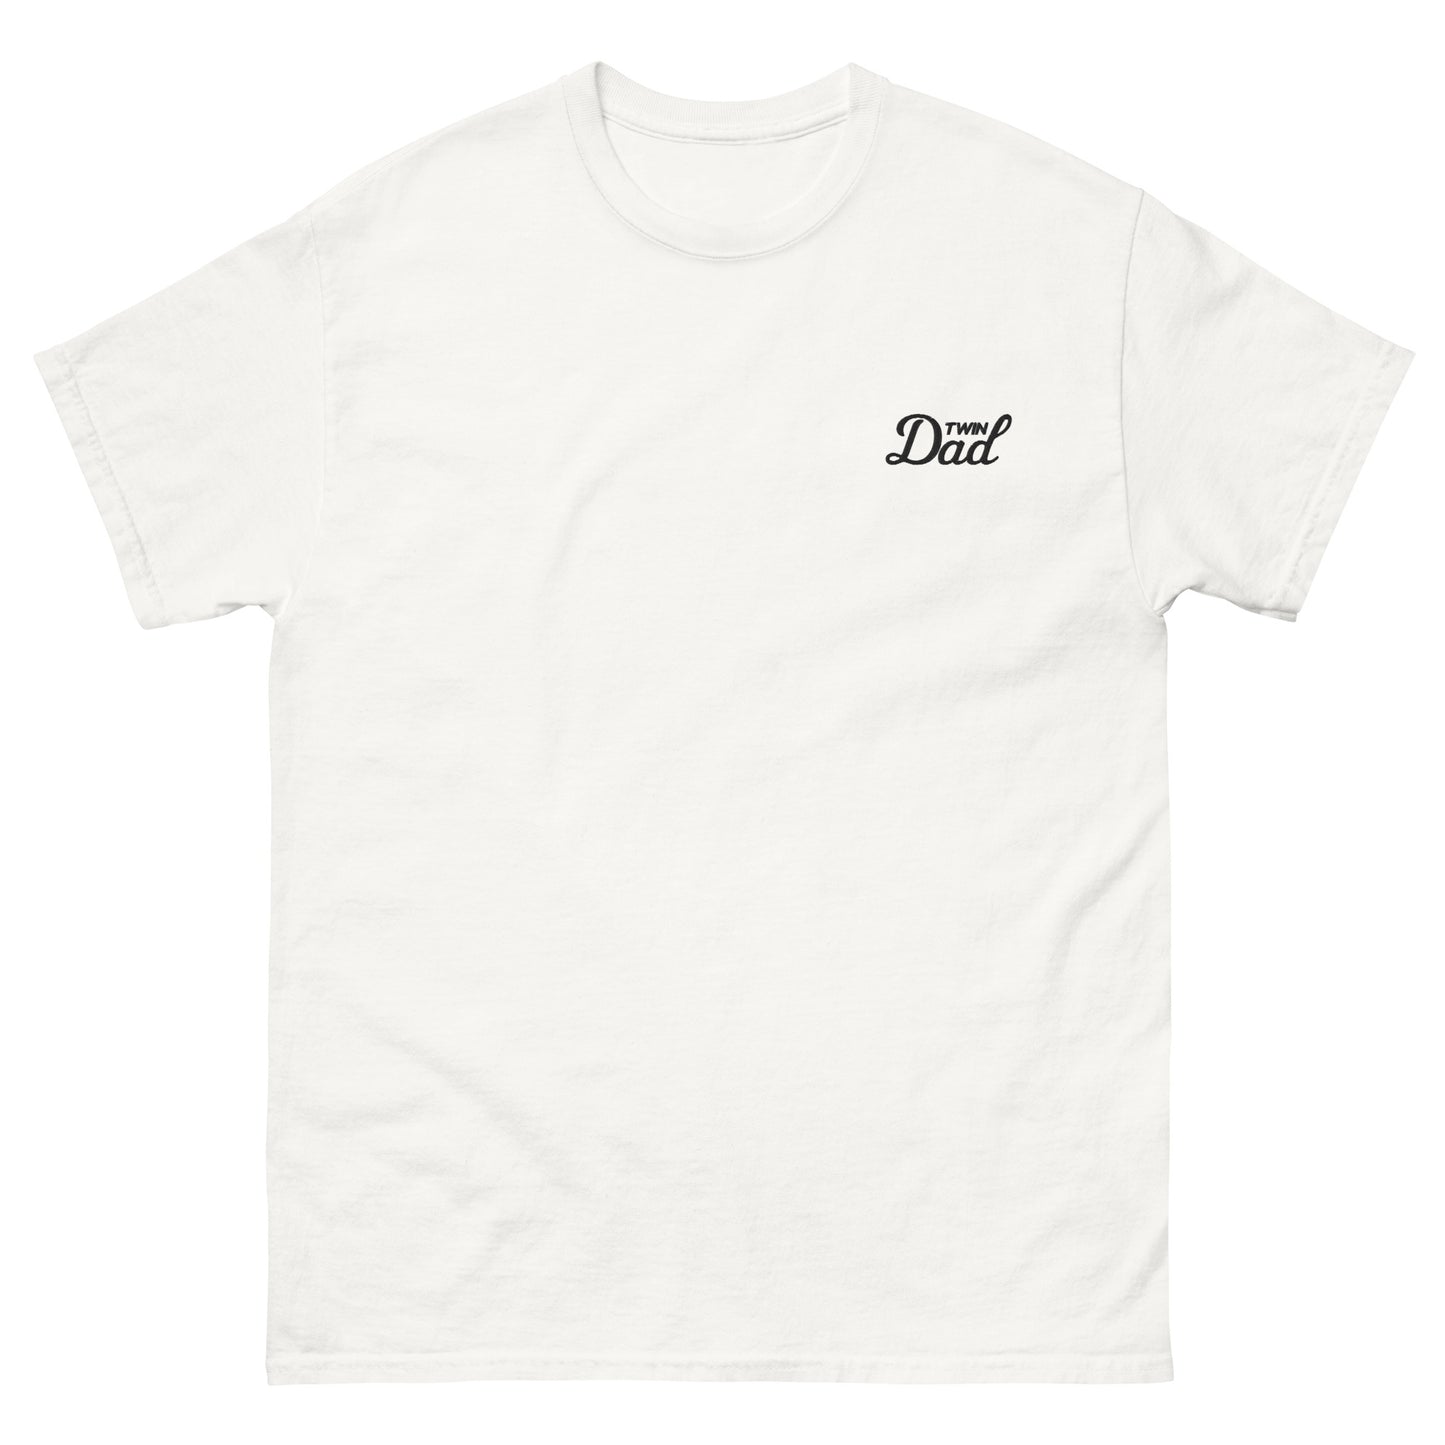 Twin Dad | T-Shirt